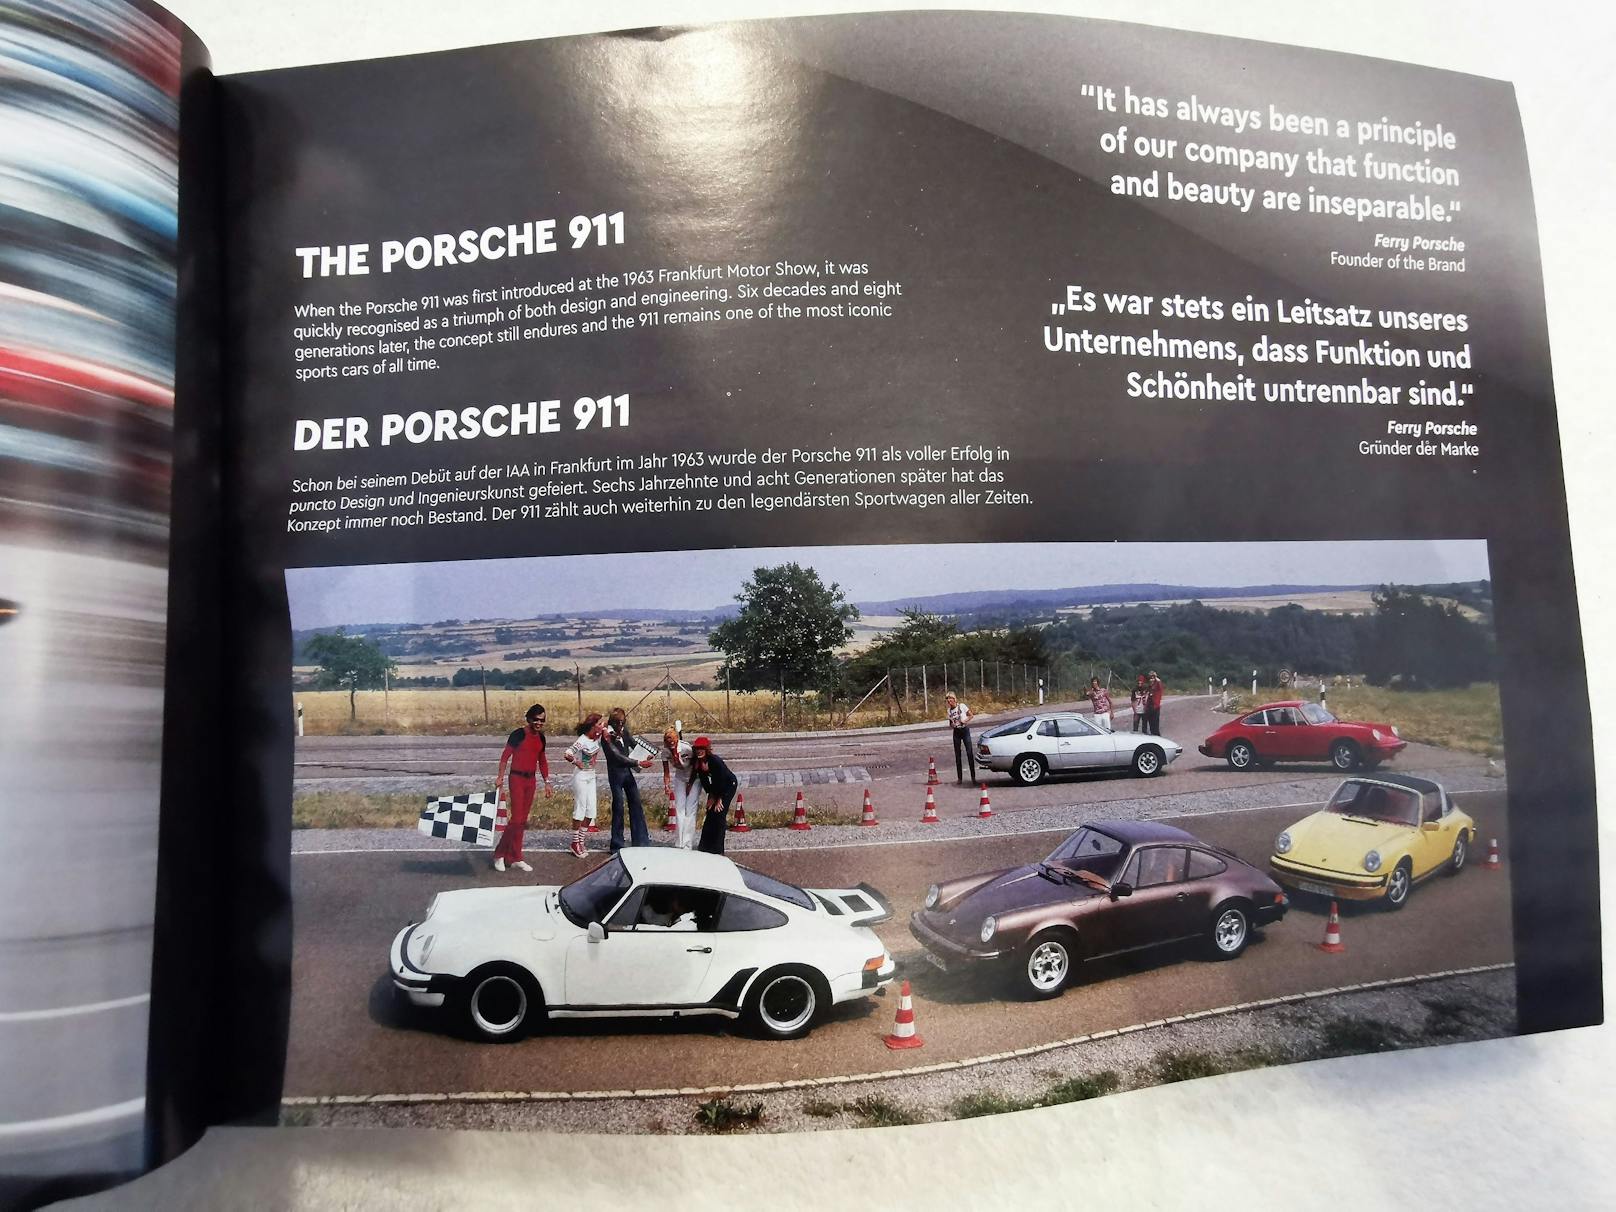 In der Anleitung wird nicht nur der Bau des Porsche 911 genau beschrieben, sie führt auch durch die Geschichte des legendären Sportwagens.